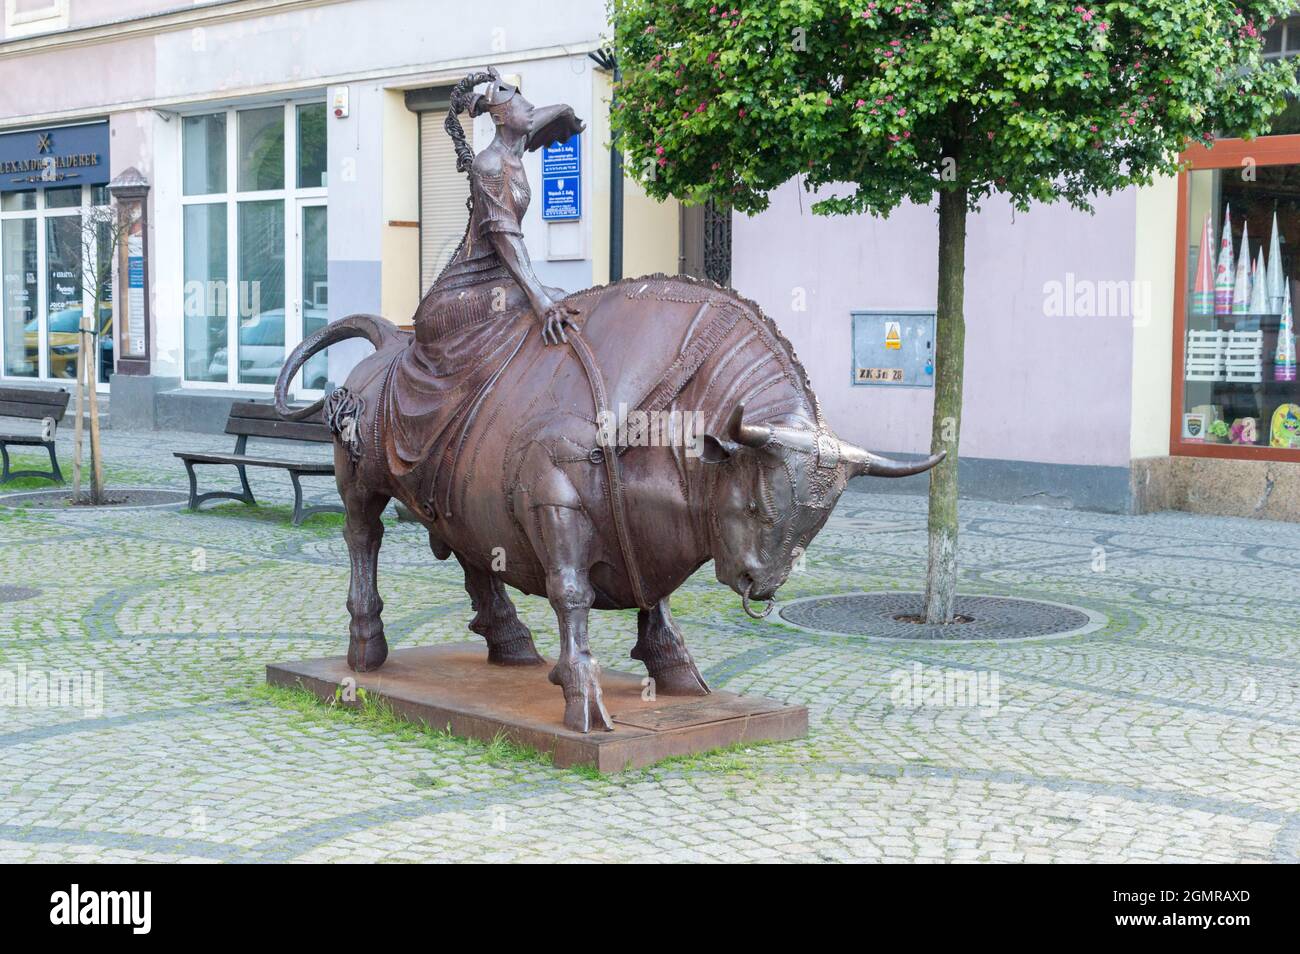 Jelenia Gora, Pologne - 2 juin 2021 : enlèvement de l'Europe (polonais : Porwanie Europy) sculpture de Vahan Bego dans la vieille ville de Jelenia Gora. Banque D'Images